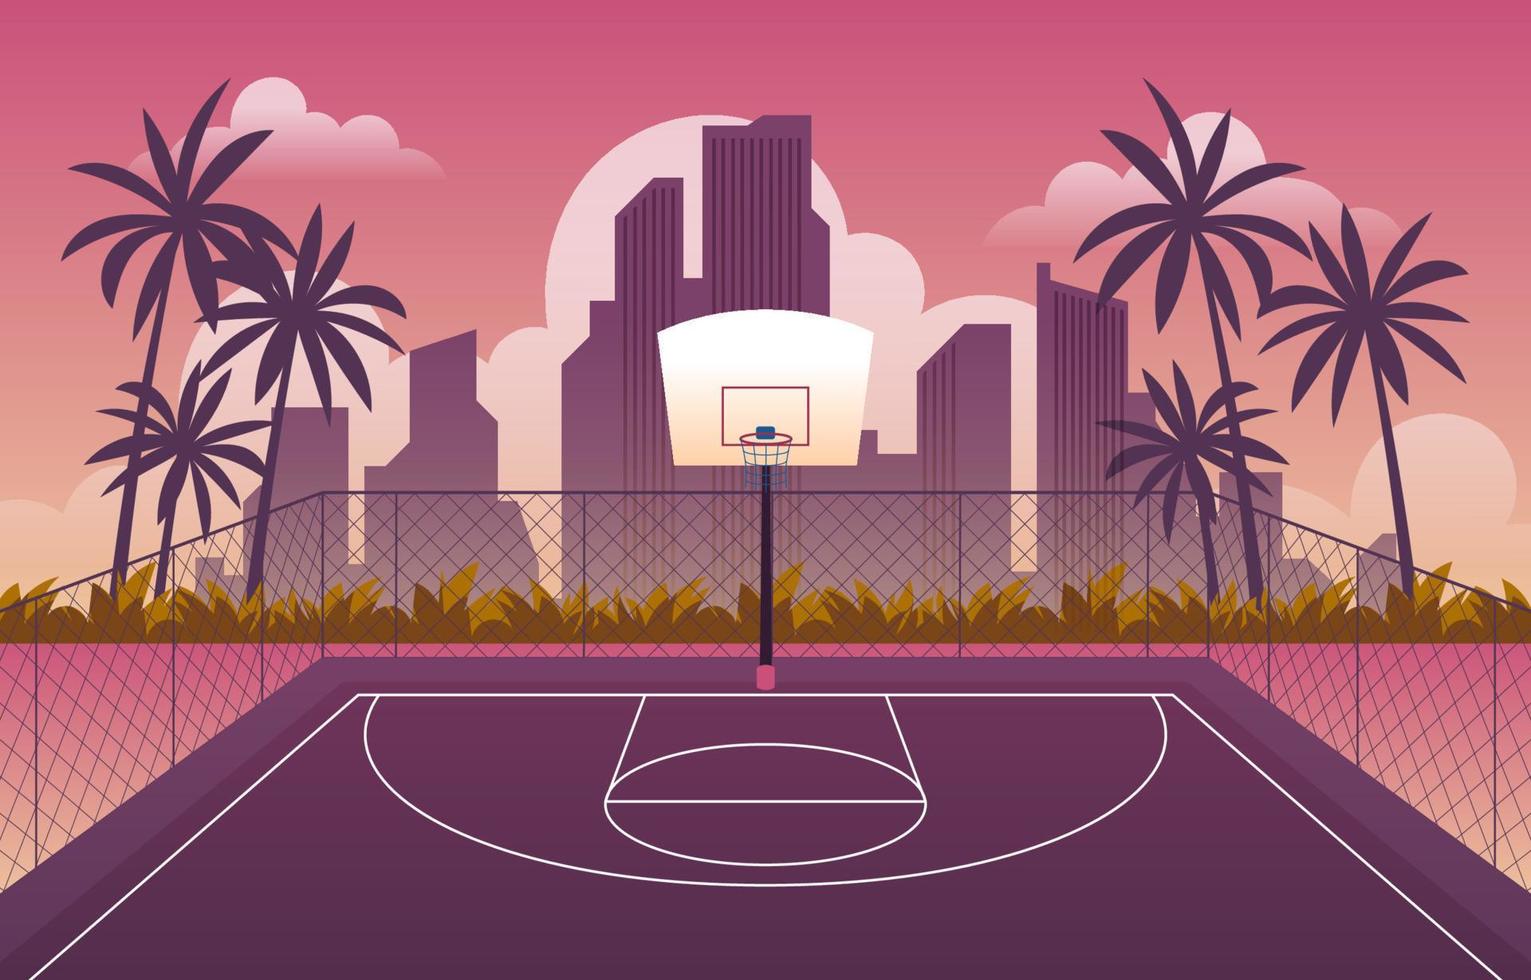 buitenshuis basketbal rechtbank met gebouw silhouet vector